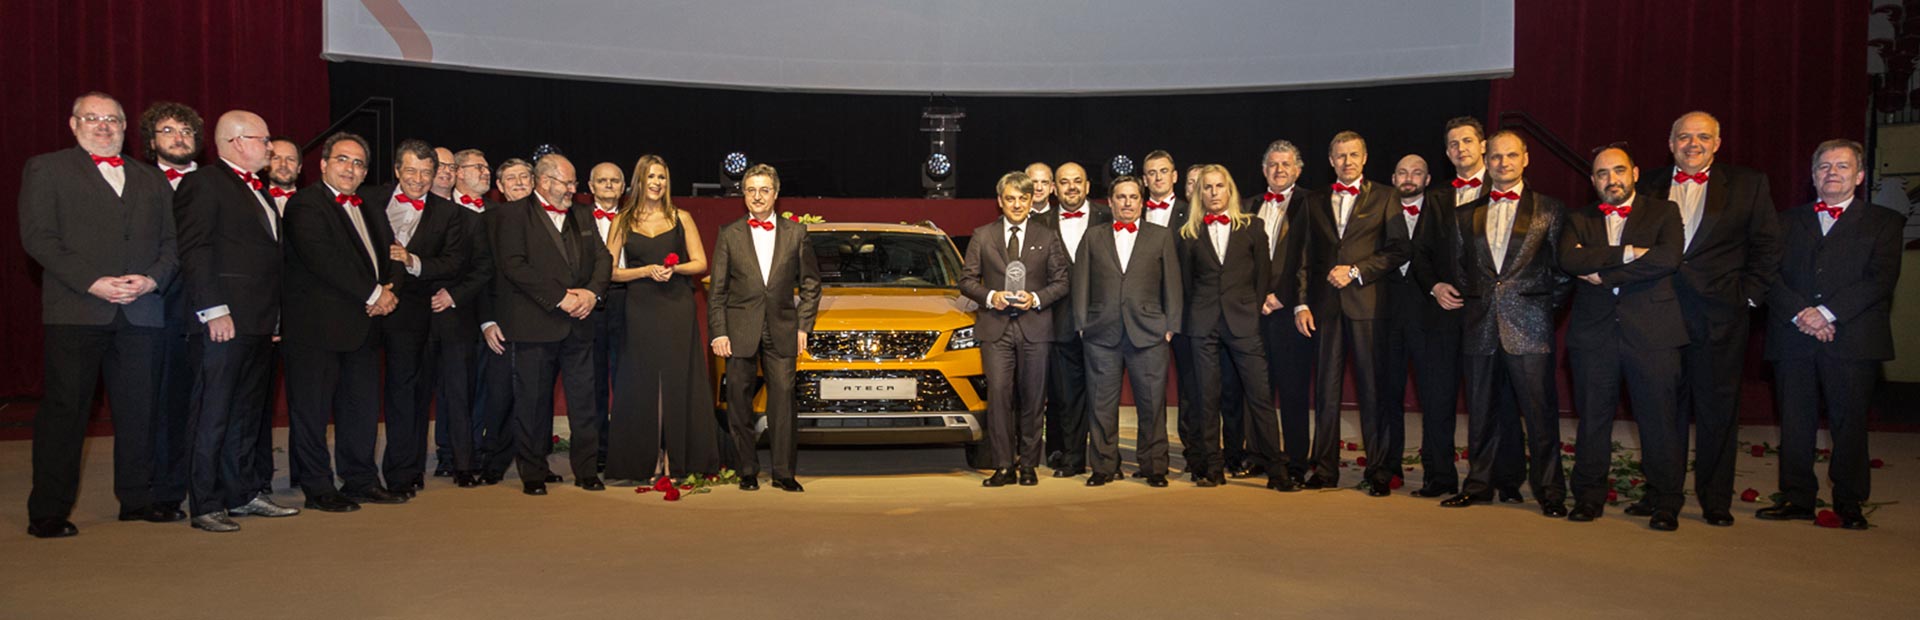 SEAT odebrał nagrodę AUTOBEST! Ateca z tytułem Best Buy Car of Europe in 2017